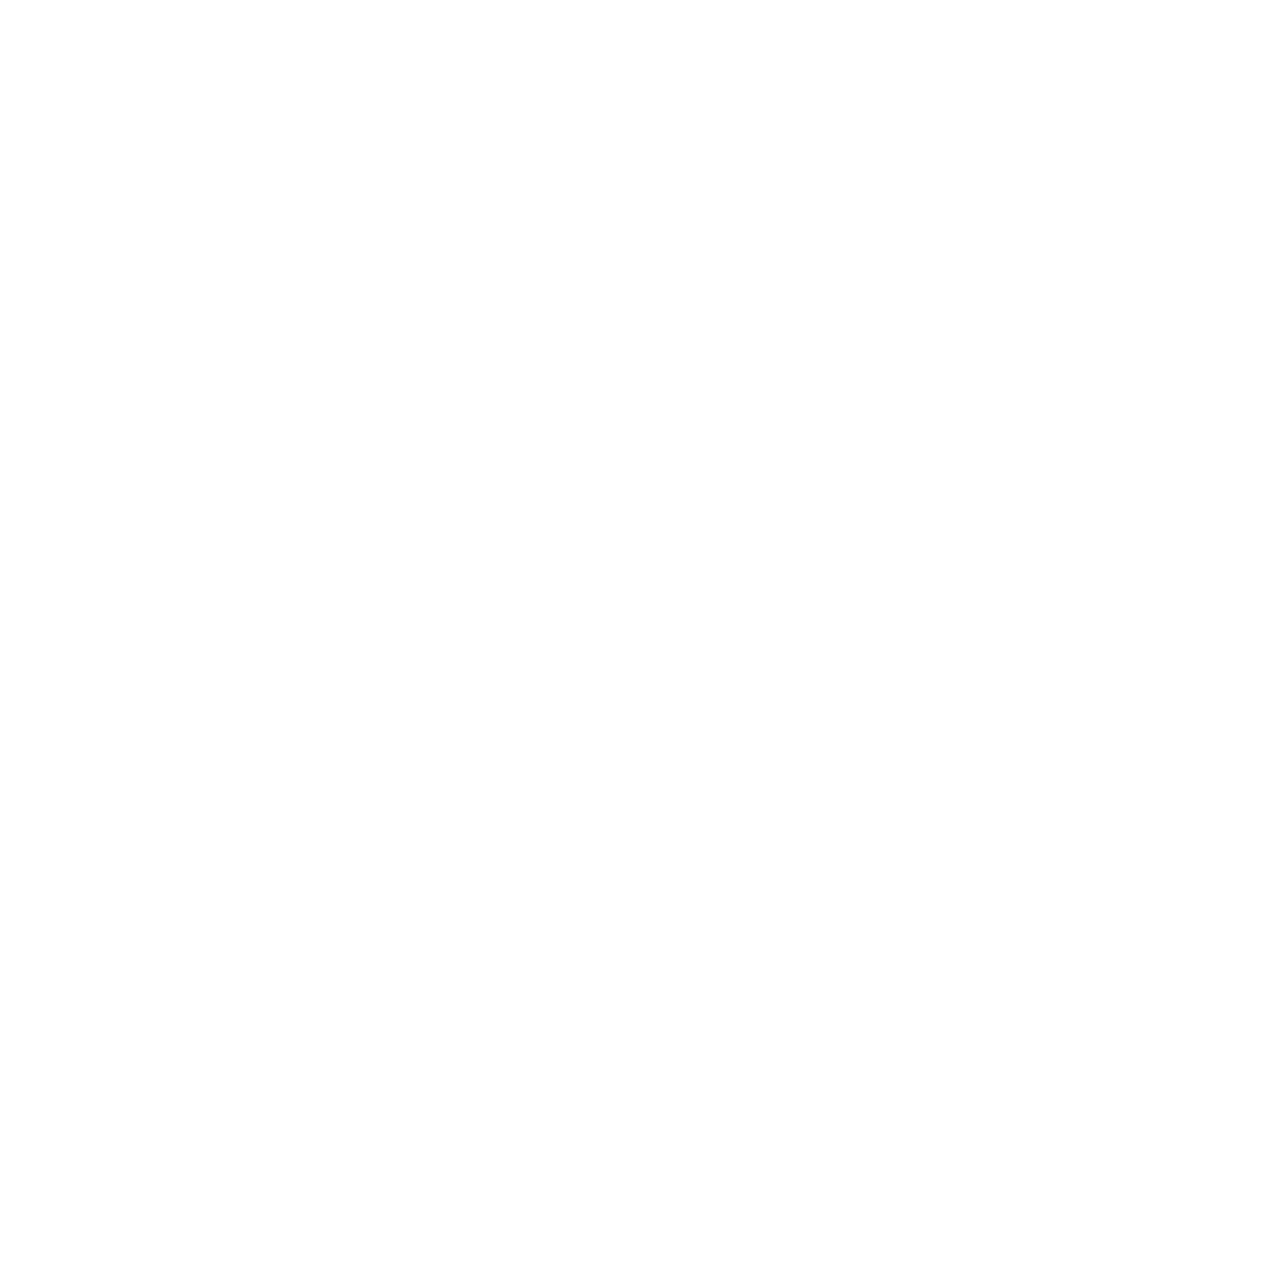 Ginkgoblatt Acryl auf Leinwand 80 x 80 cm